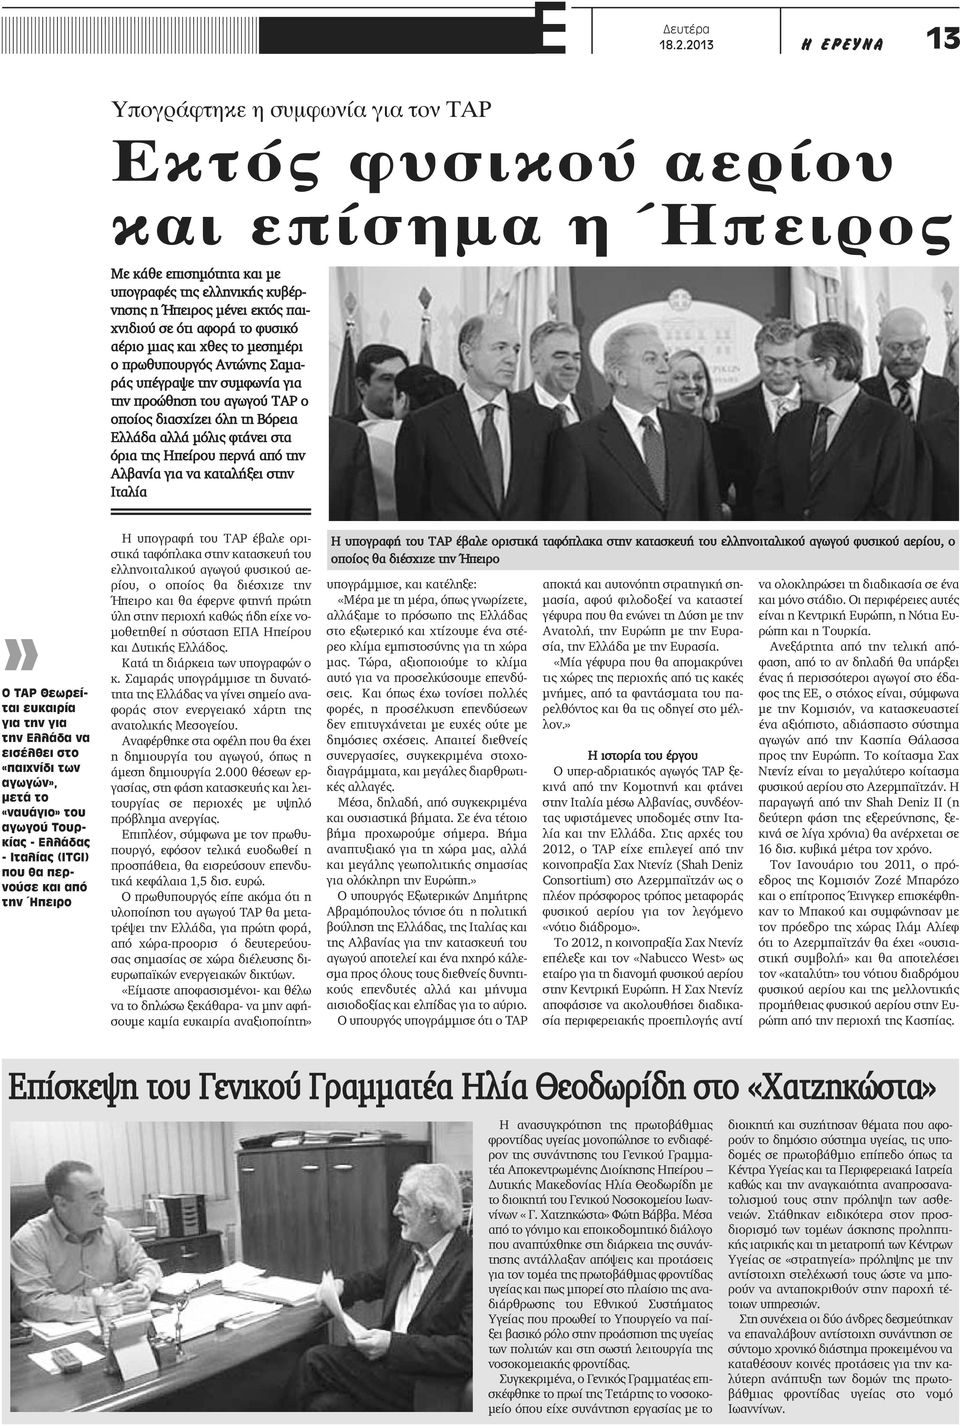 αφορά το φυσικό αέριο μιας και χθες το μεσημέρι ο πρωθυπουργός Αντώνης Σαμαράς υπέγραψε την συμφωνία για την προώθηση του αγωγού ΤΑΡ ο οποίος διασχίζει όλη τη Βόρεια Ελλάδα αλλά μόλις φτάνει στα όρια